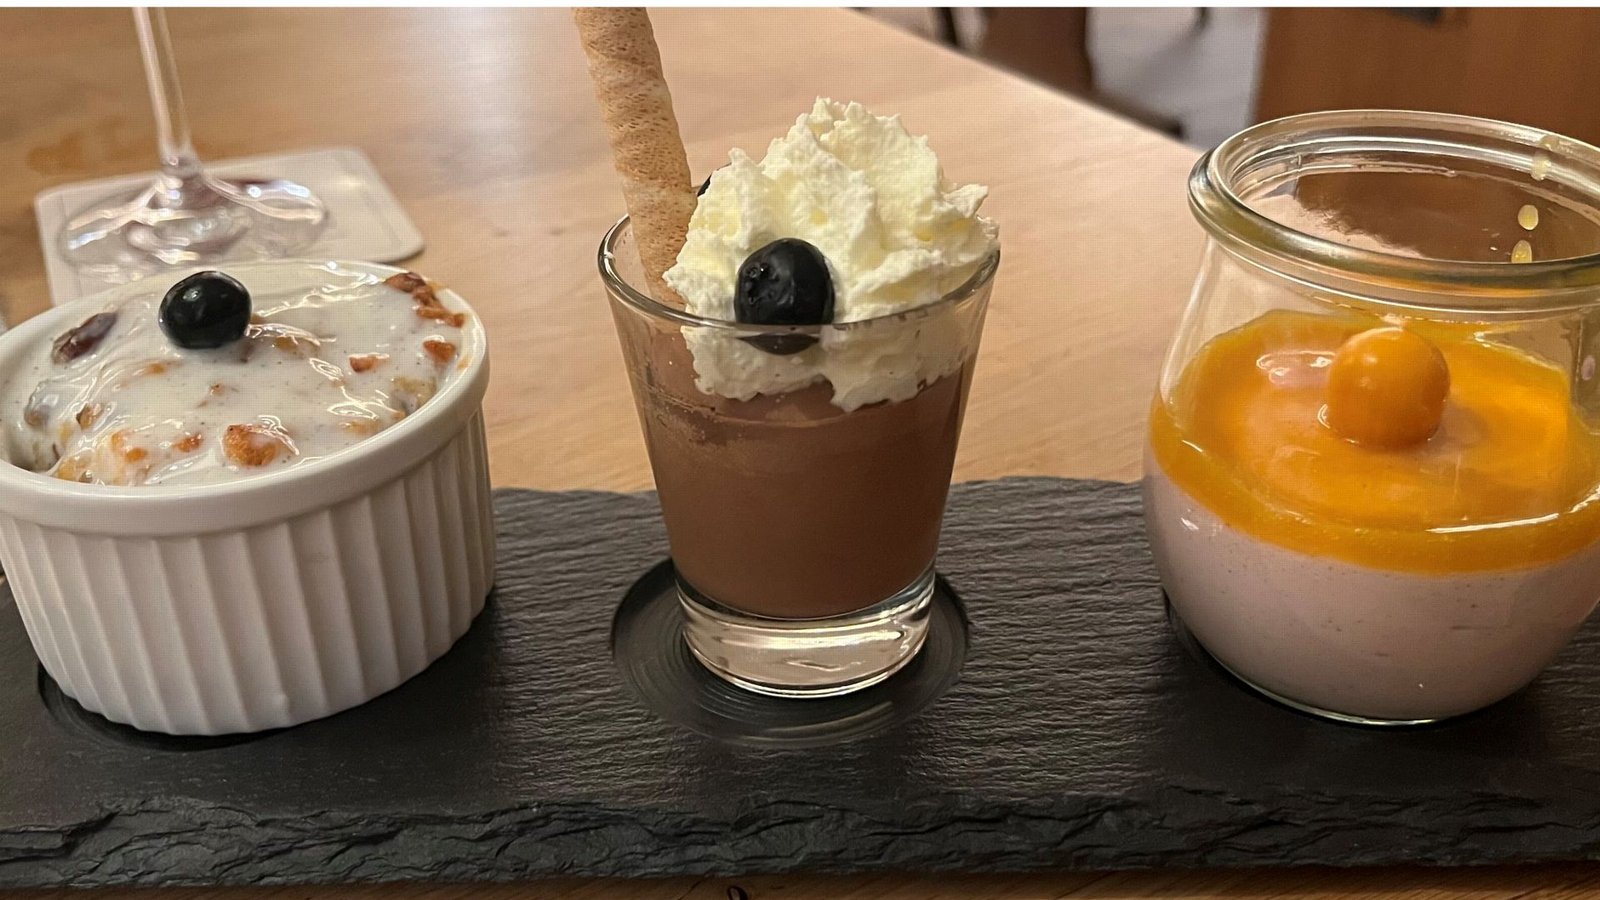 Die Dessertvariation besteht aus einem kleinen Ofenschlupfer, einem Schokoladenmousse und einer Himbeercreme mit Mangosoße.Foto: Susanne Hamann